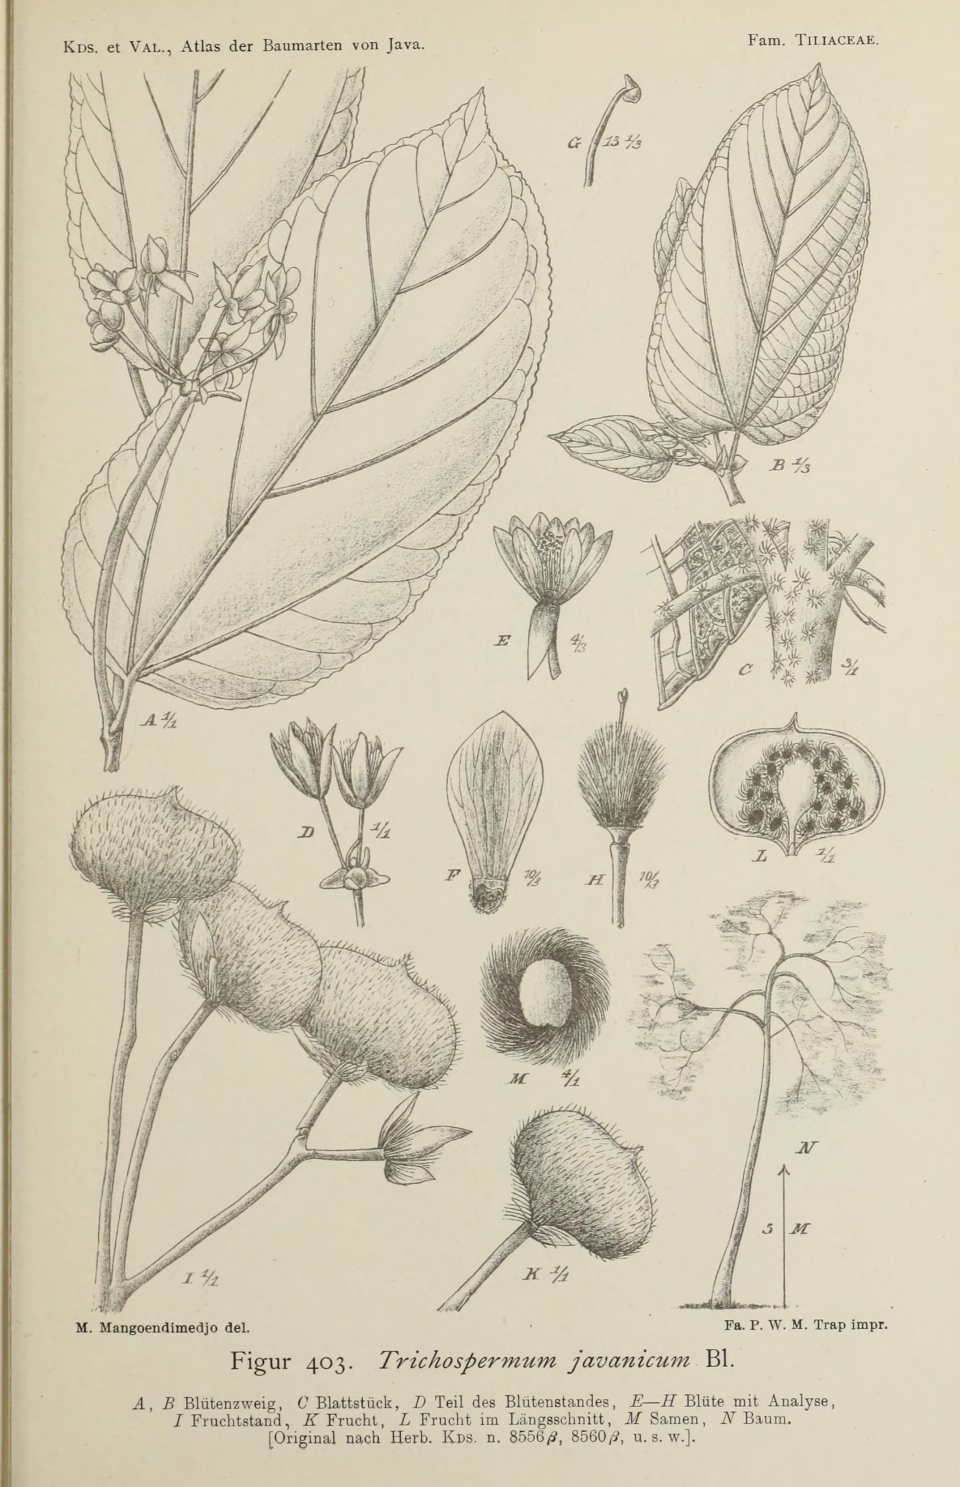 Trichospermum javanicum